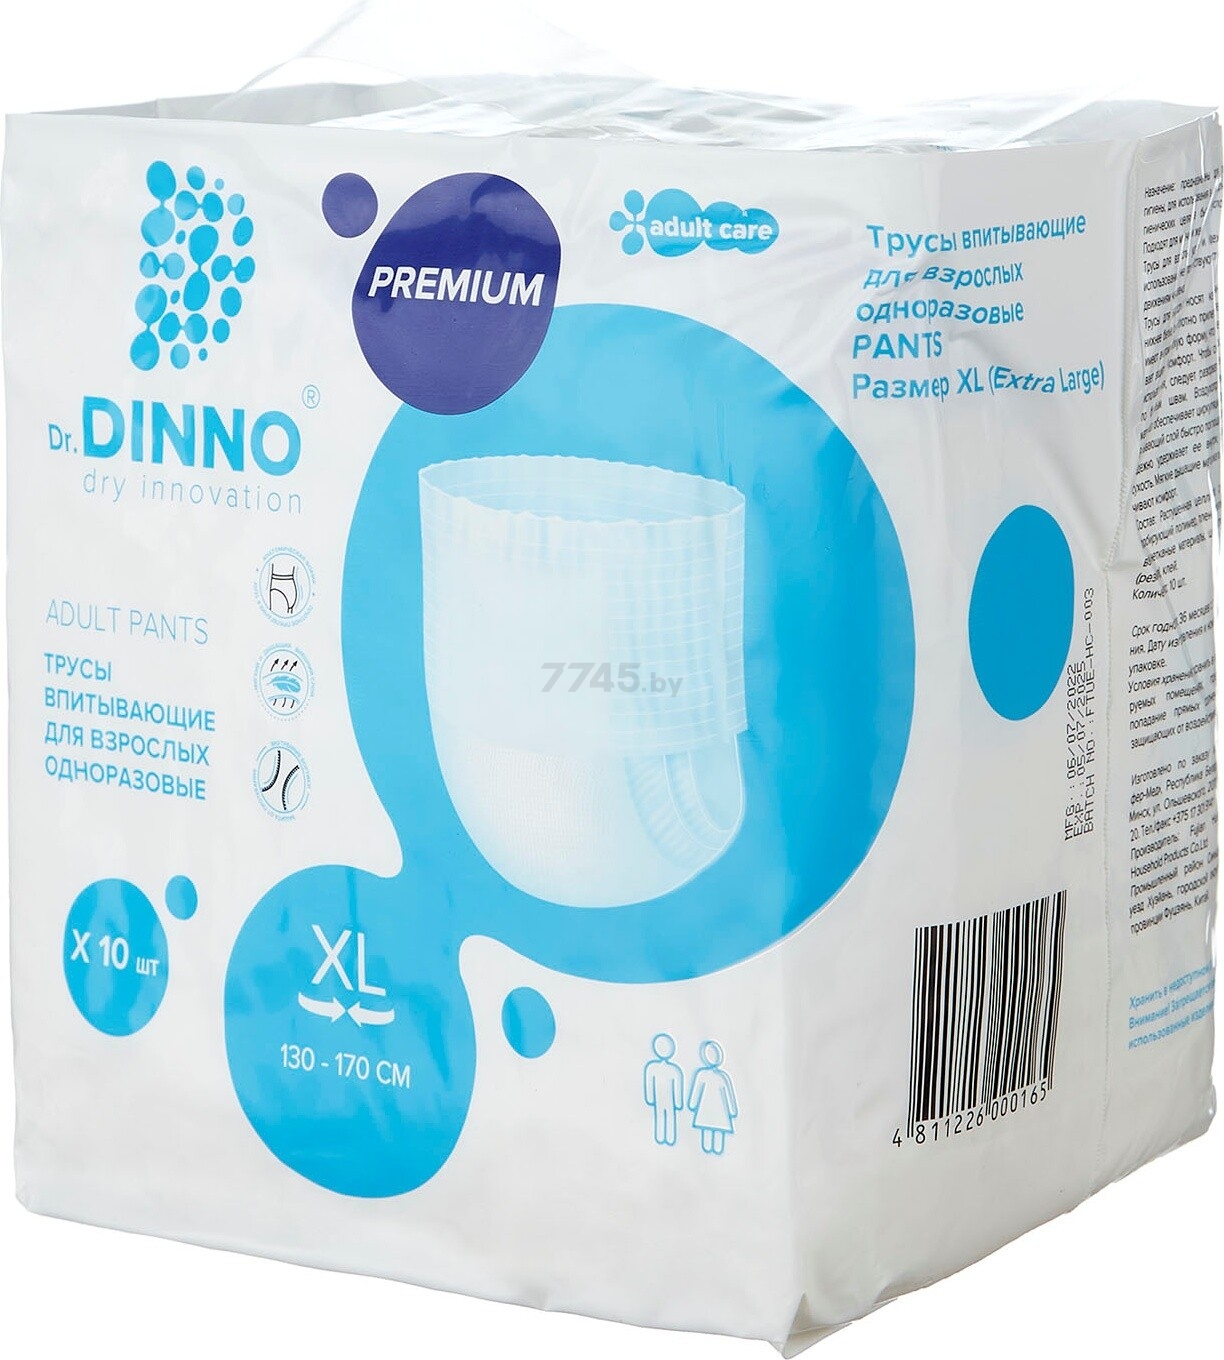 Трусики впитывающие для взрослых DR. DINNO Premium Extra Large 130-170 см 10 штук (4811226000165) - Фото 2